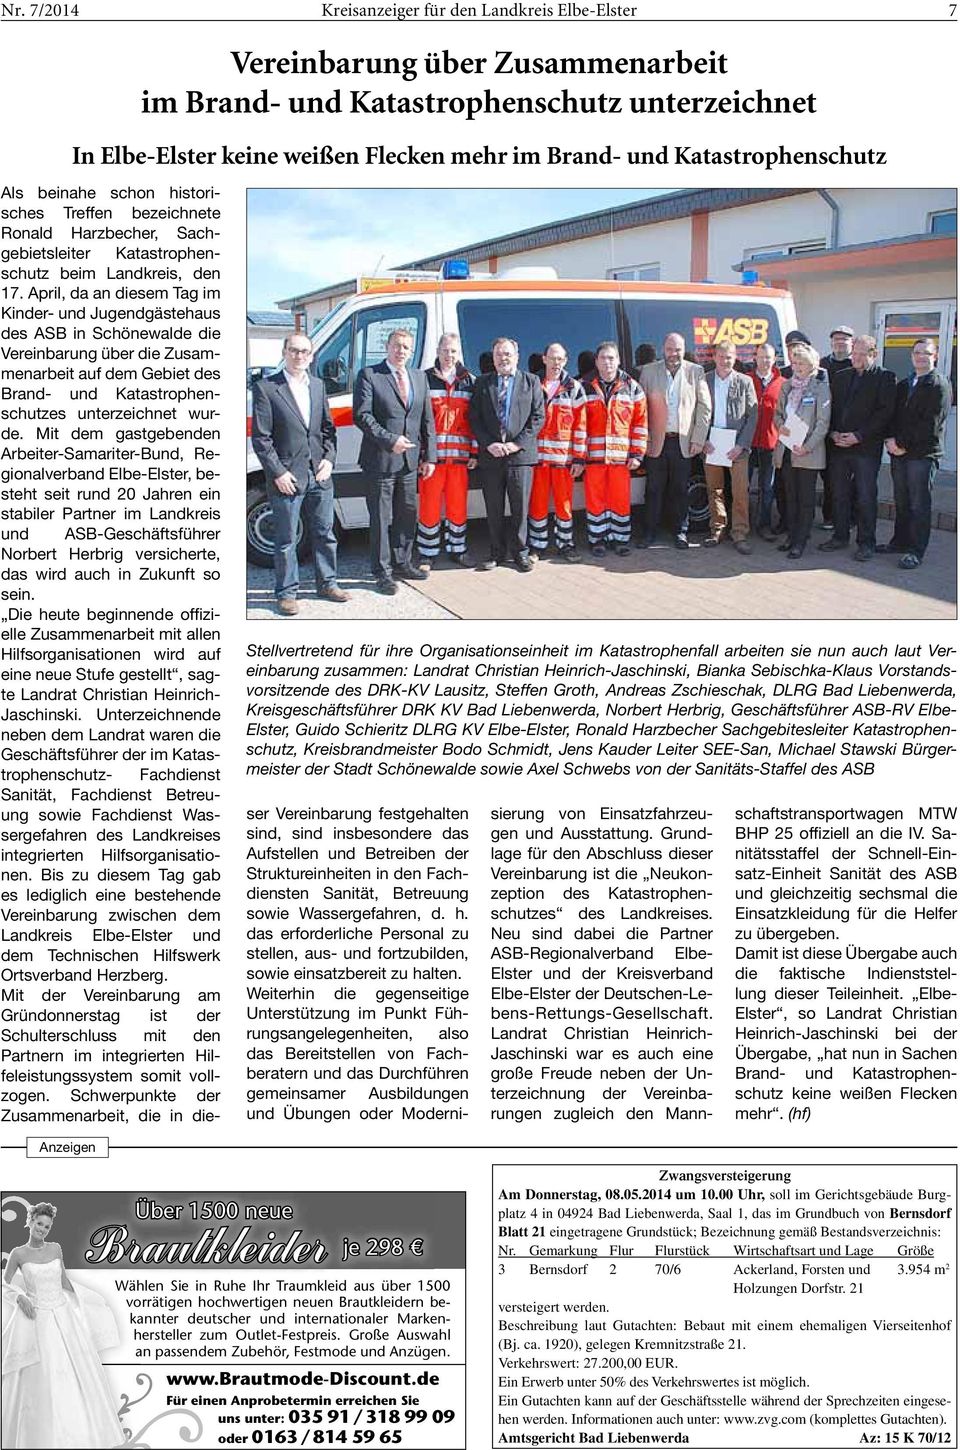 April, da an diesem Tag im Kinder- und Jugendgästehaus des ASB in Schönewalde die Vereinbarung über die Zusammenarbeit auf dem Gebiet des Brand- und Katastrophenschutzes unterzeichnet wurde.